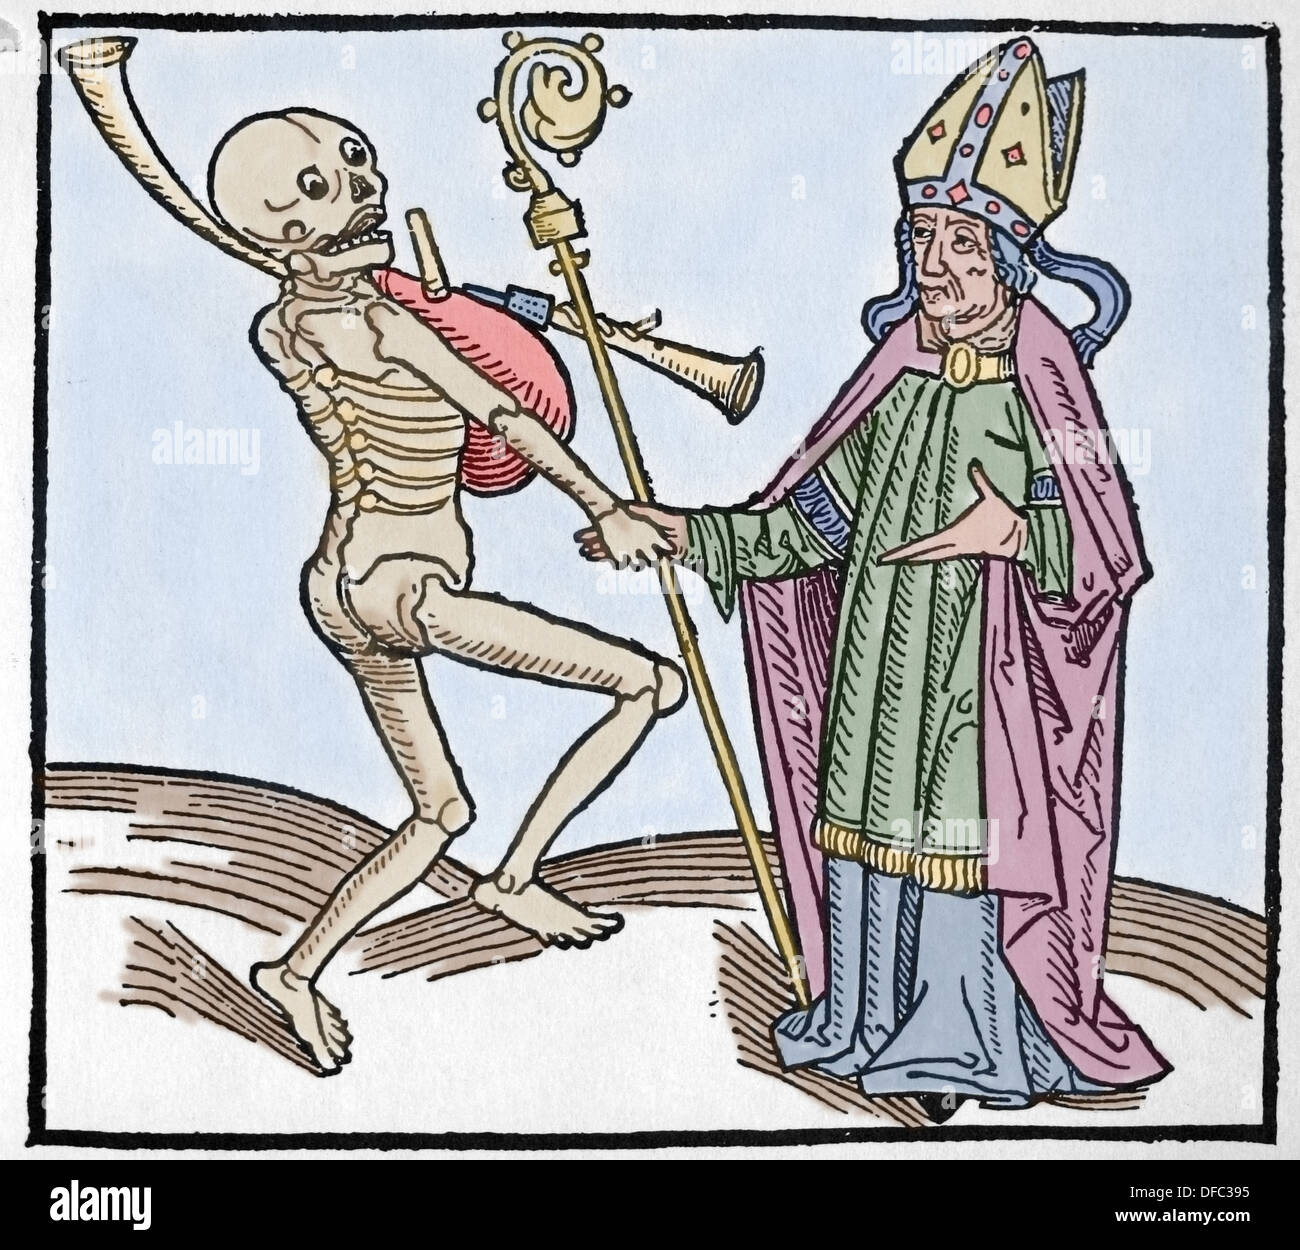 Mittelalterliche Periode. Europe.14th Jahrhunderts. Tanz des Todes. Allegorie der Universalität des Todes. Farbige Gravur. Stockfoto